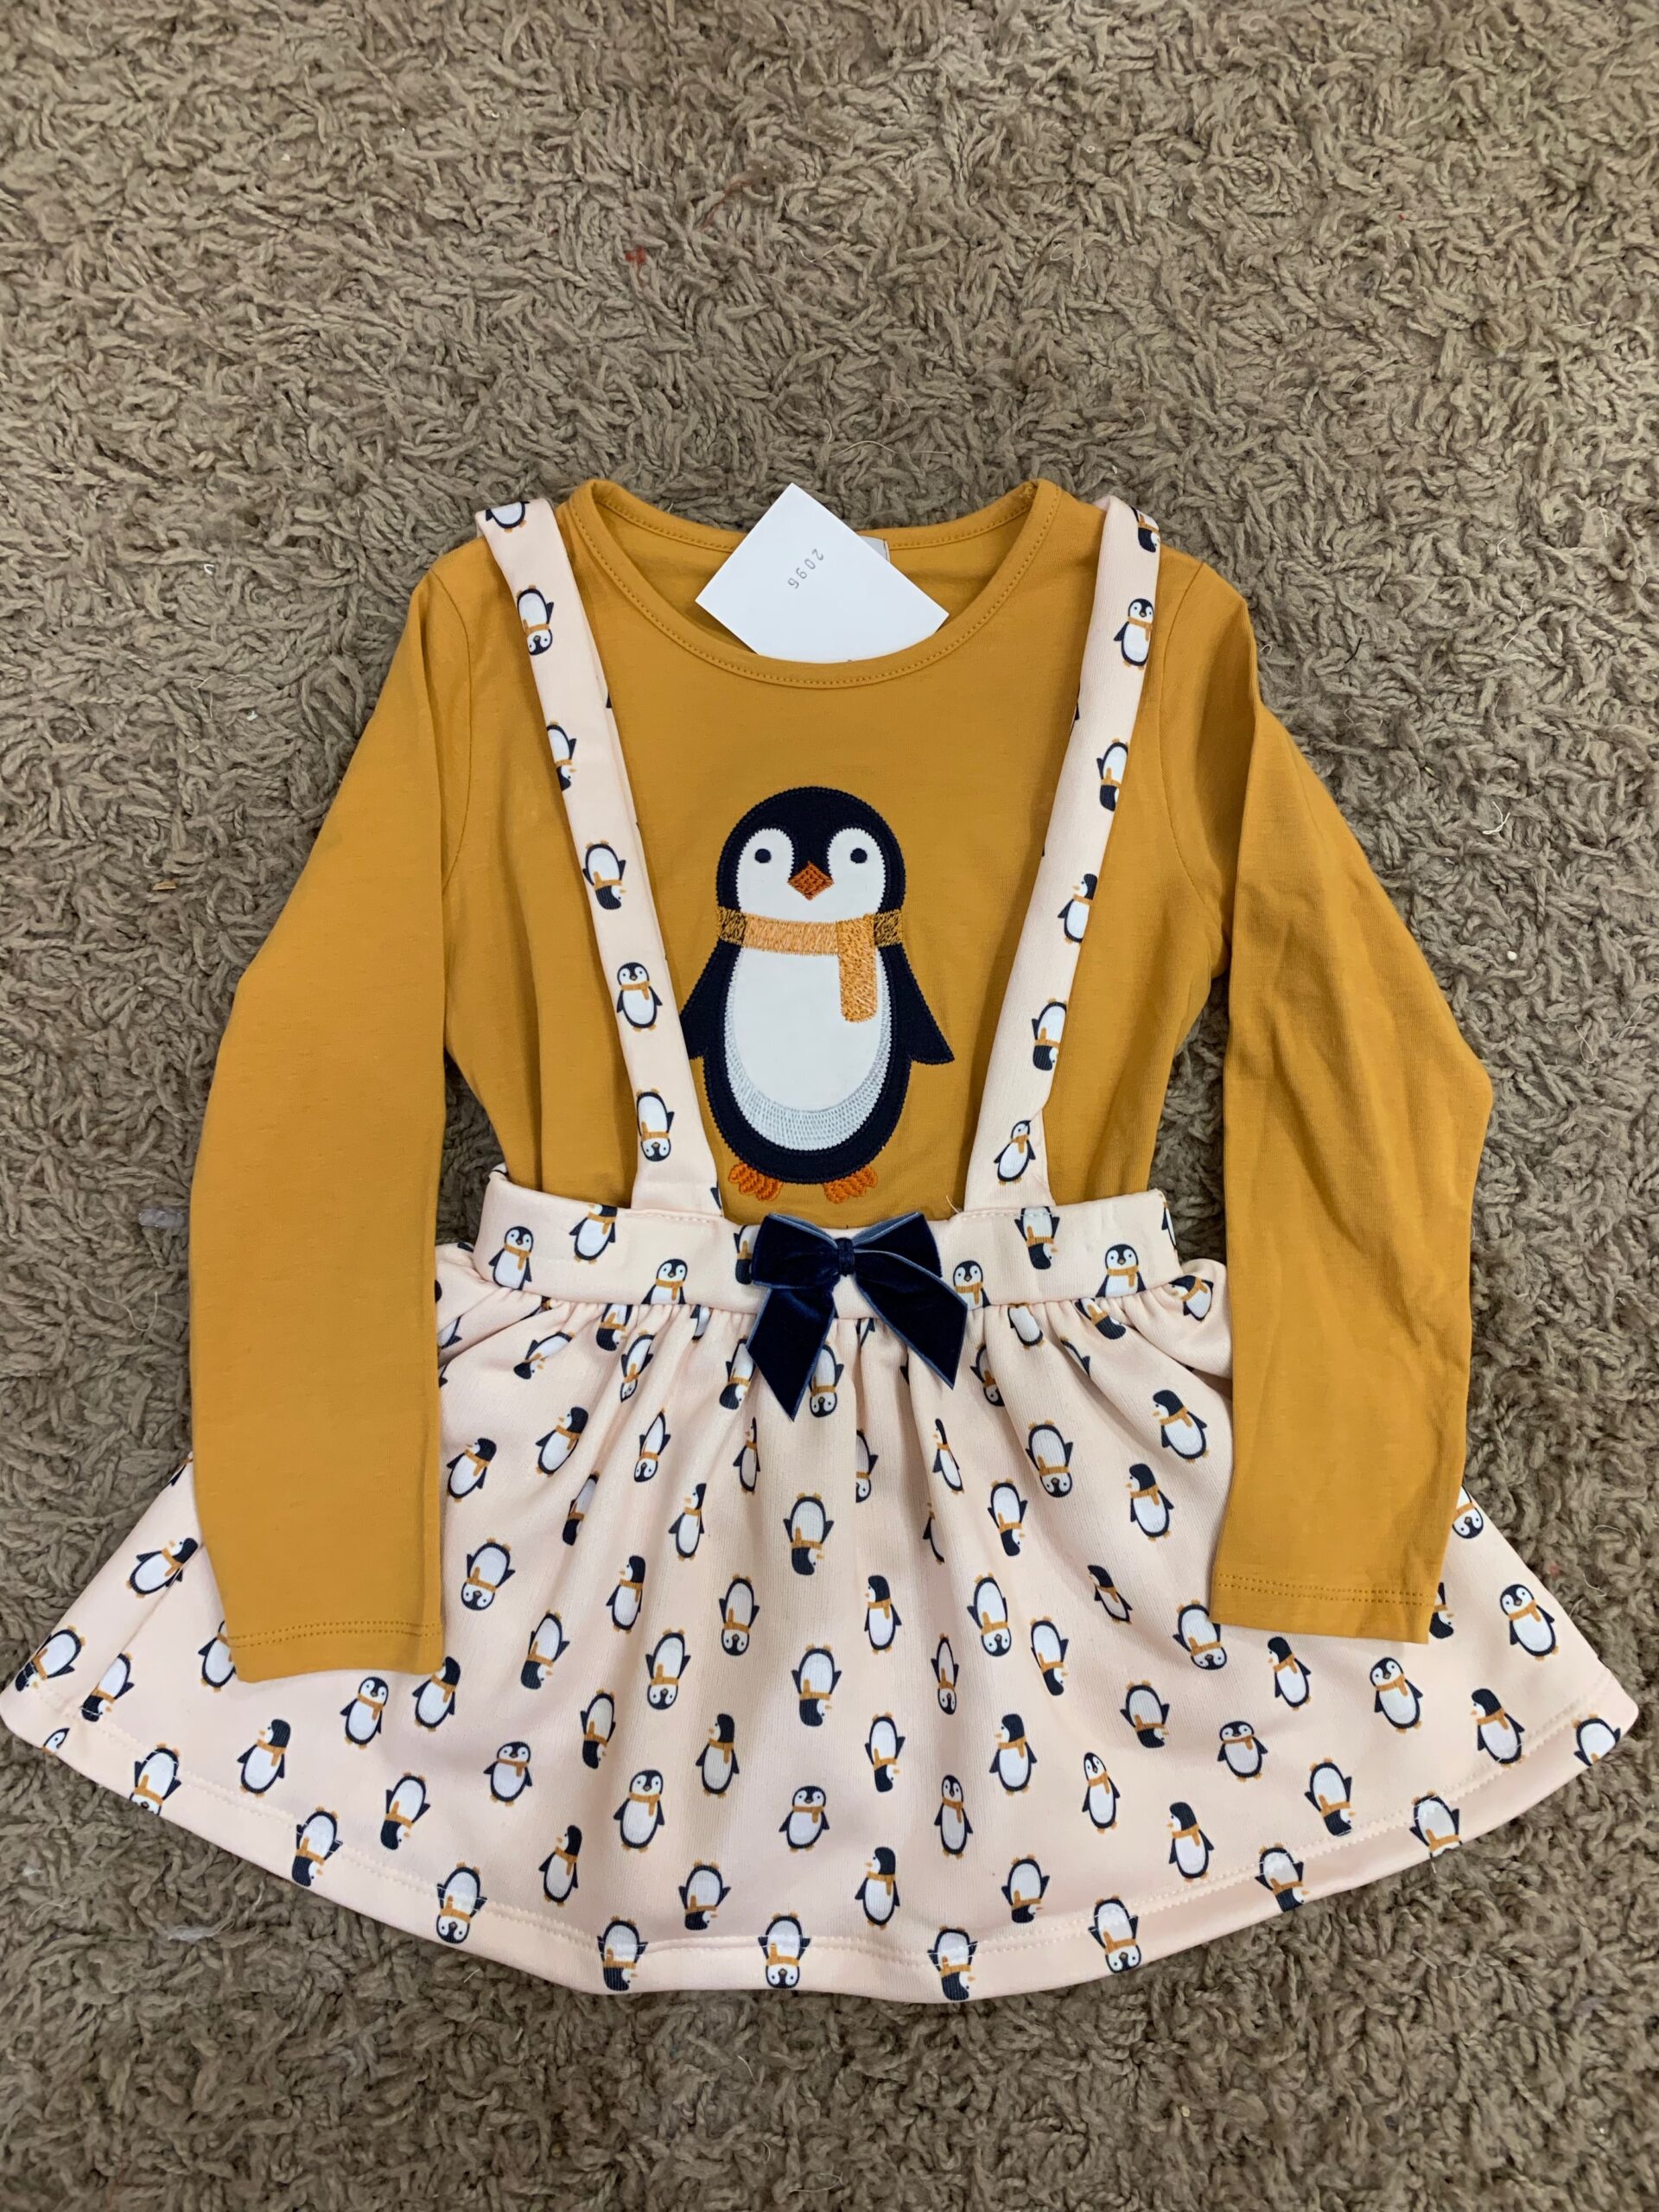 Pinguin skirt set